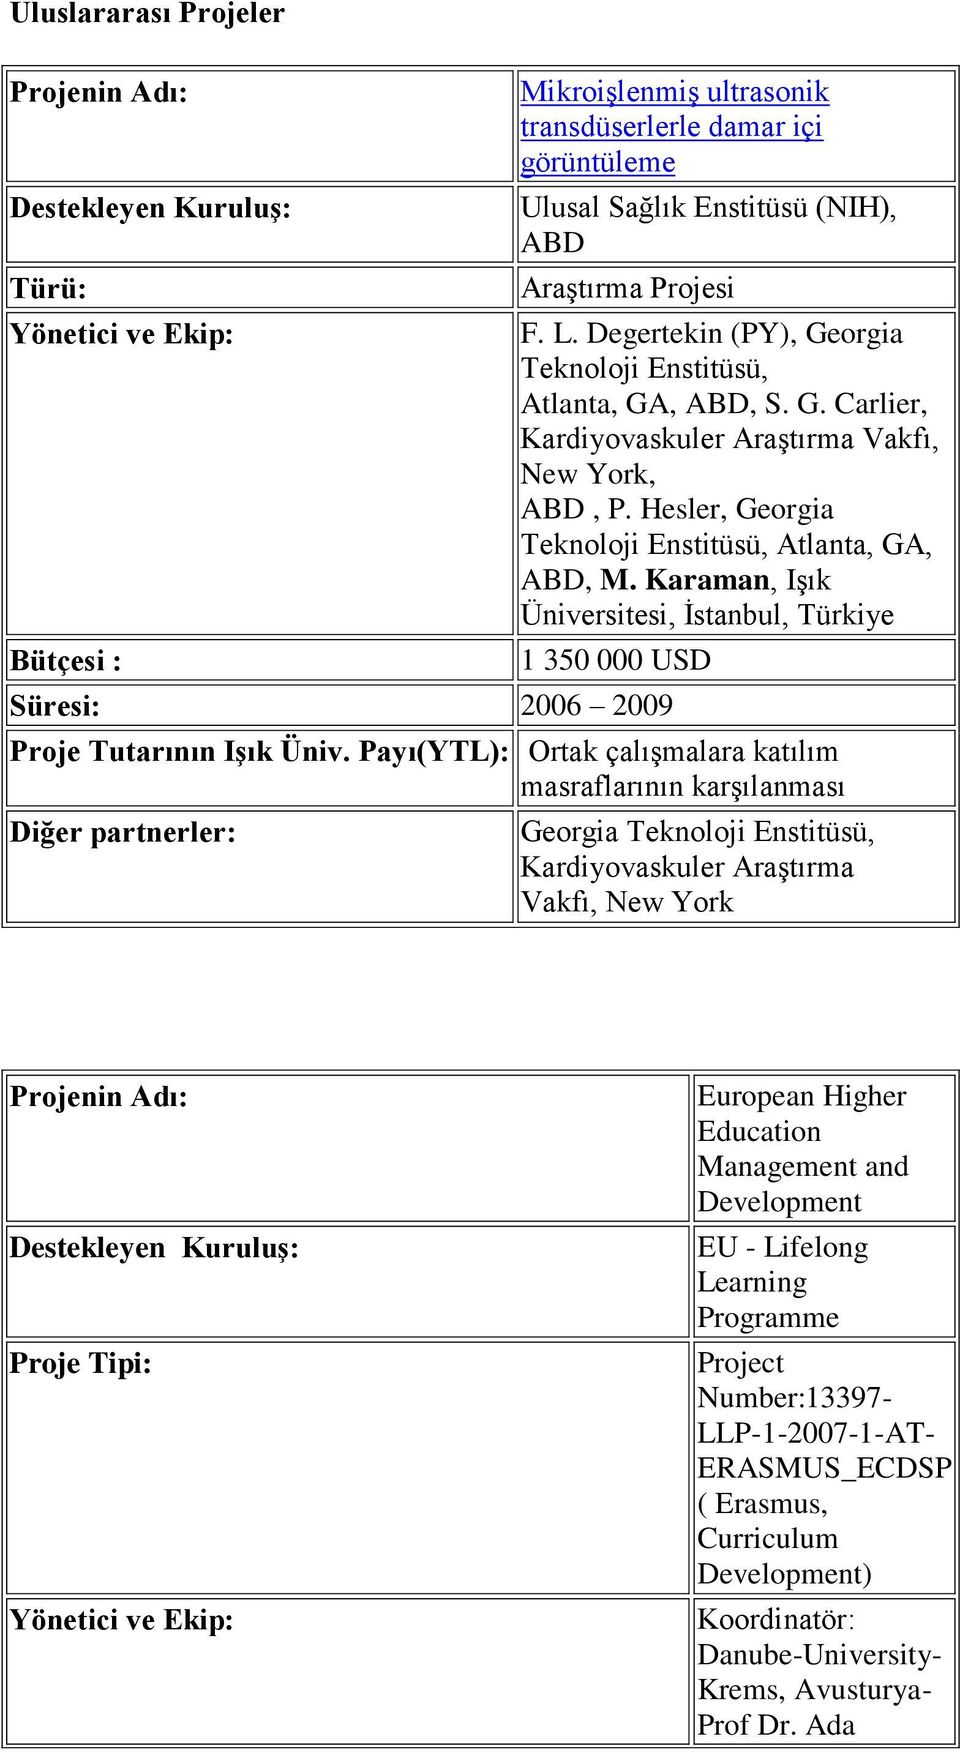 Karaman, Işık Üniversitesi, İstanbul, Türkiye 1 350 000 USD Süresi: 2006 2009 Ortak çalışmalara katılım masraflarının karşılanması Georgia Teknoloji Enstitüsü, Kardiyovaskuler Araştırma Vakfı, New